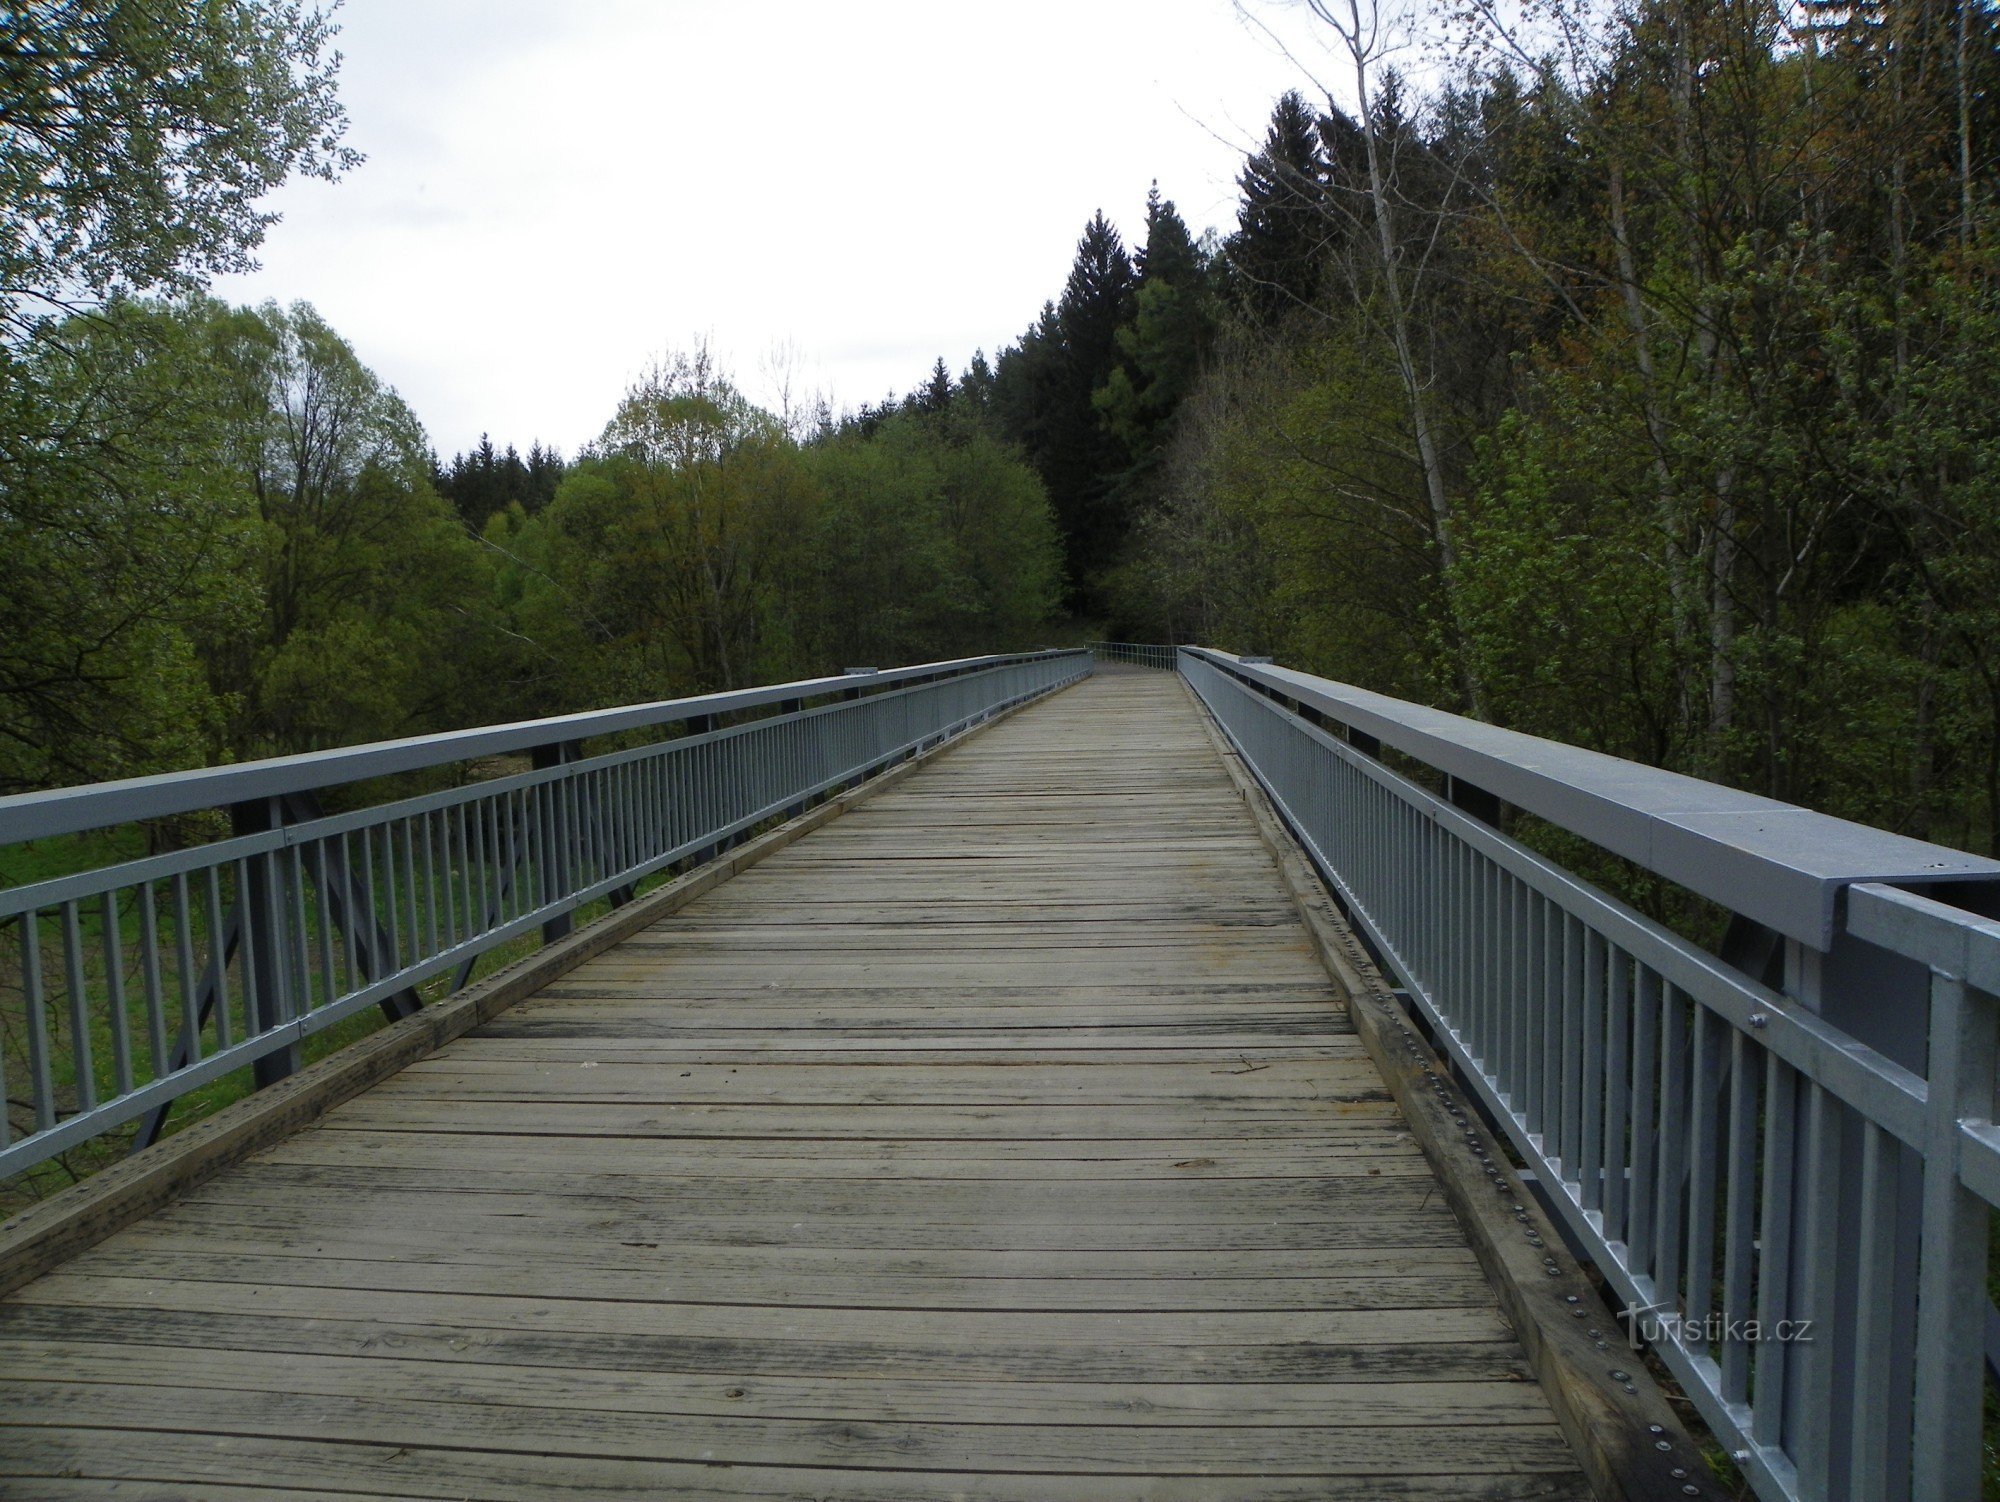 自行车道路线上的新桥